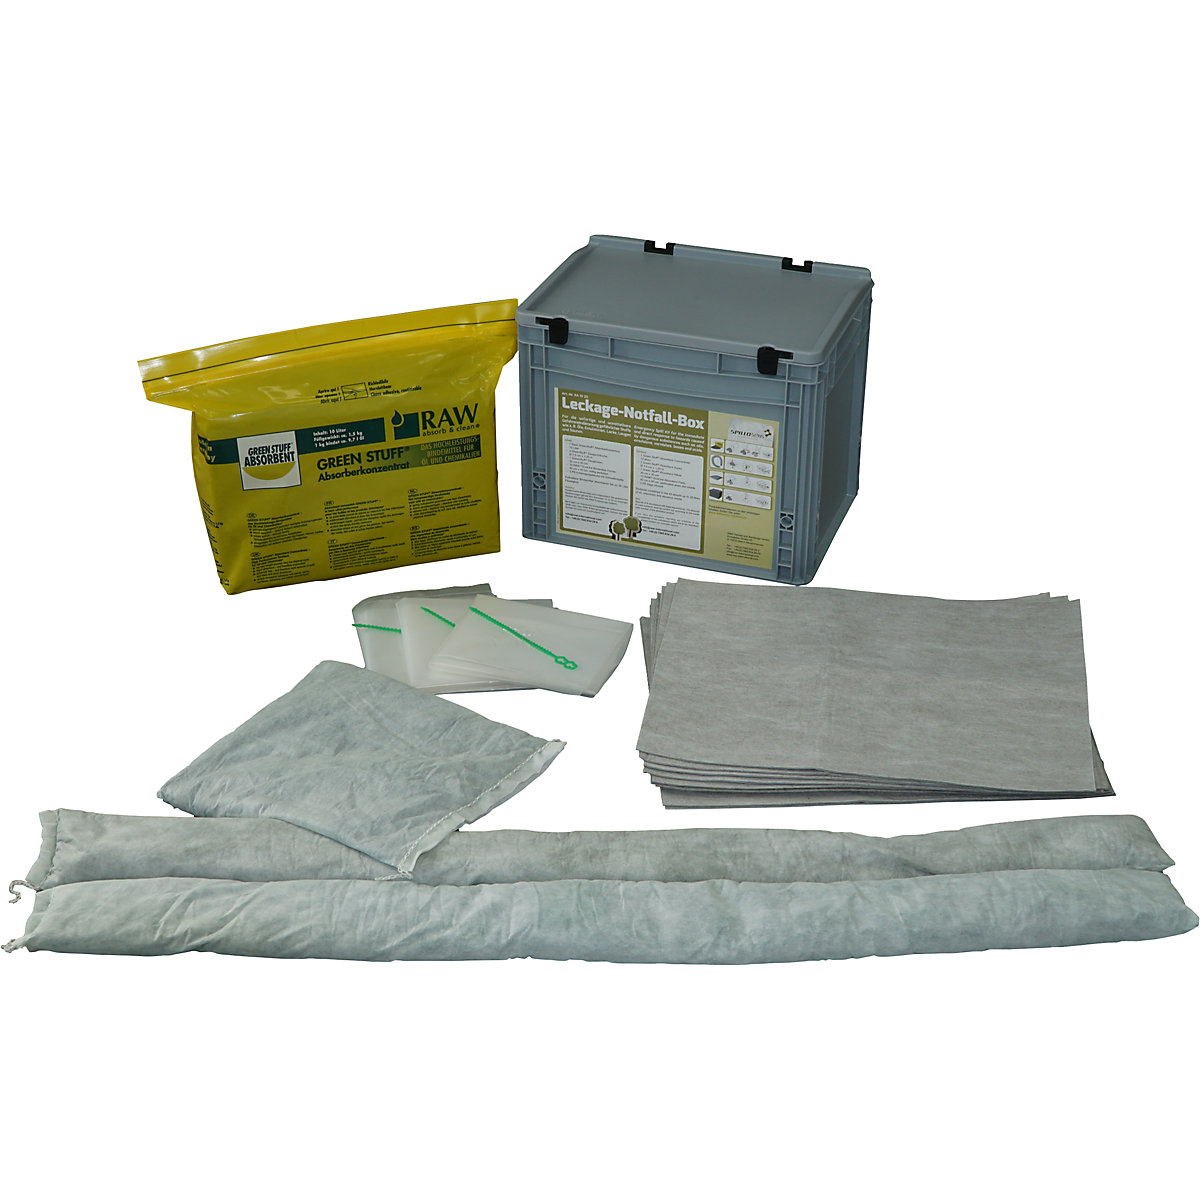 Spillage emergency set, absorbent concentrate, absorbent sheeting, absorbent socks, absorbent cushion, disposal bag